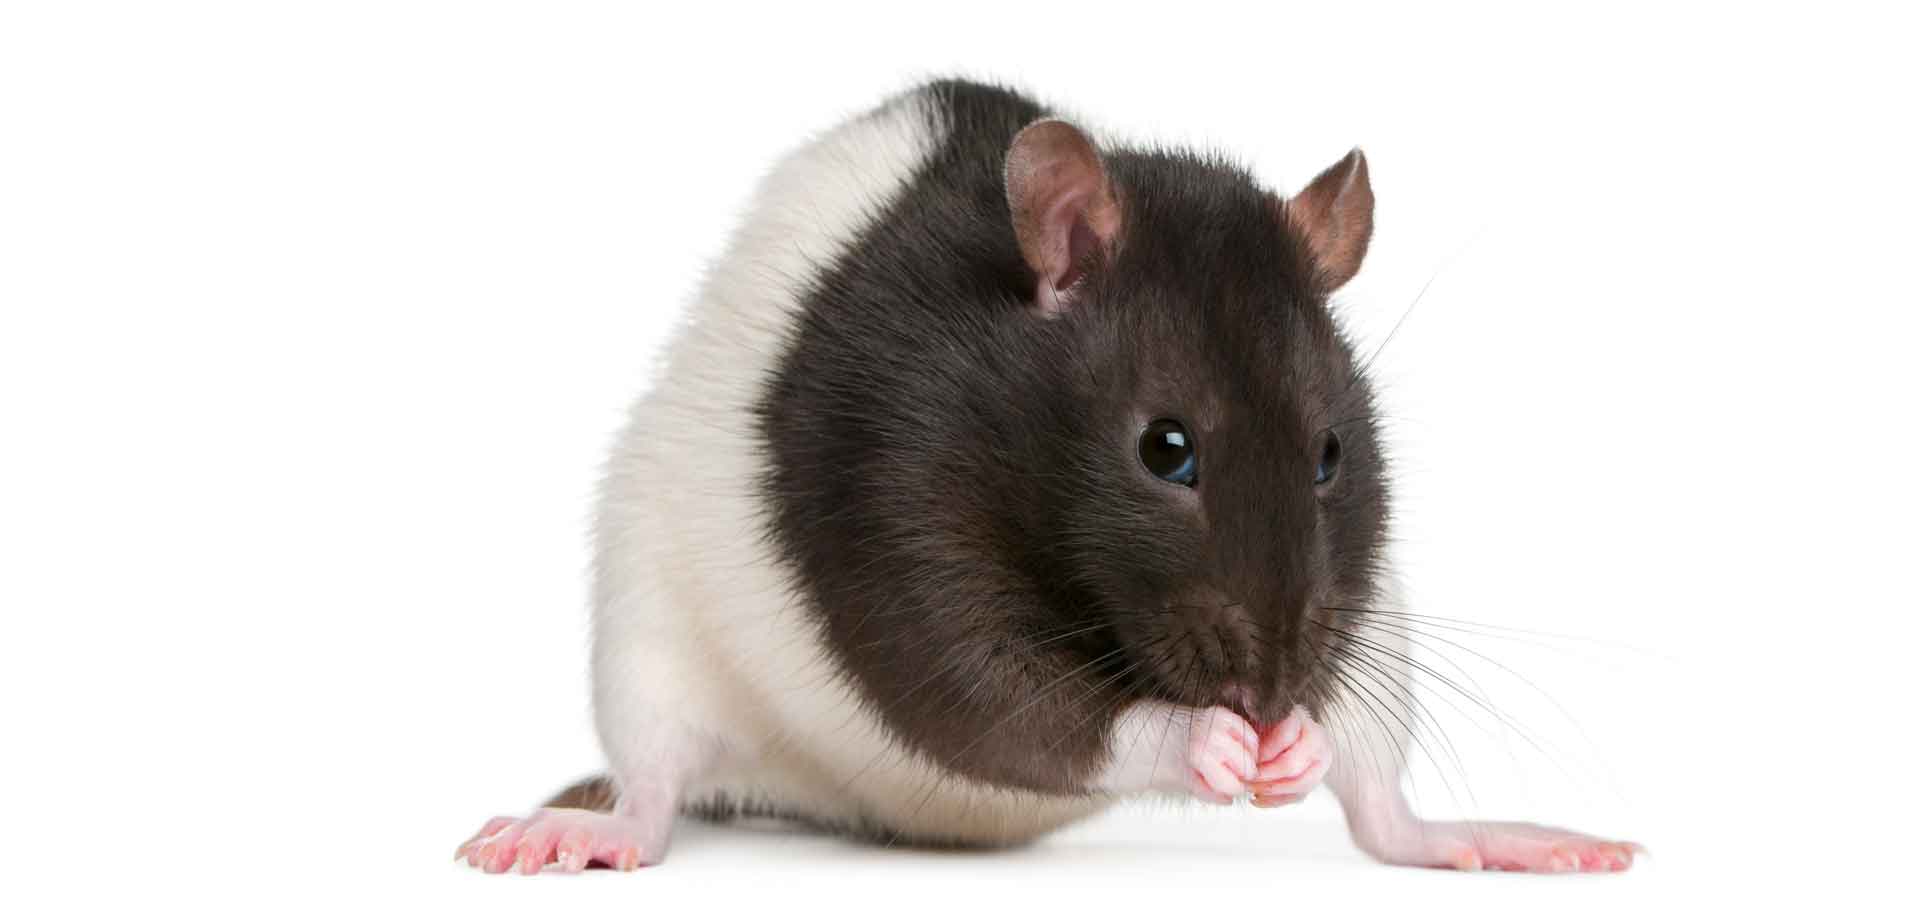 Tierarzt Ratten und Mäuse